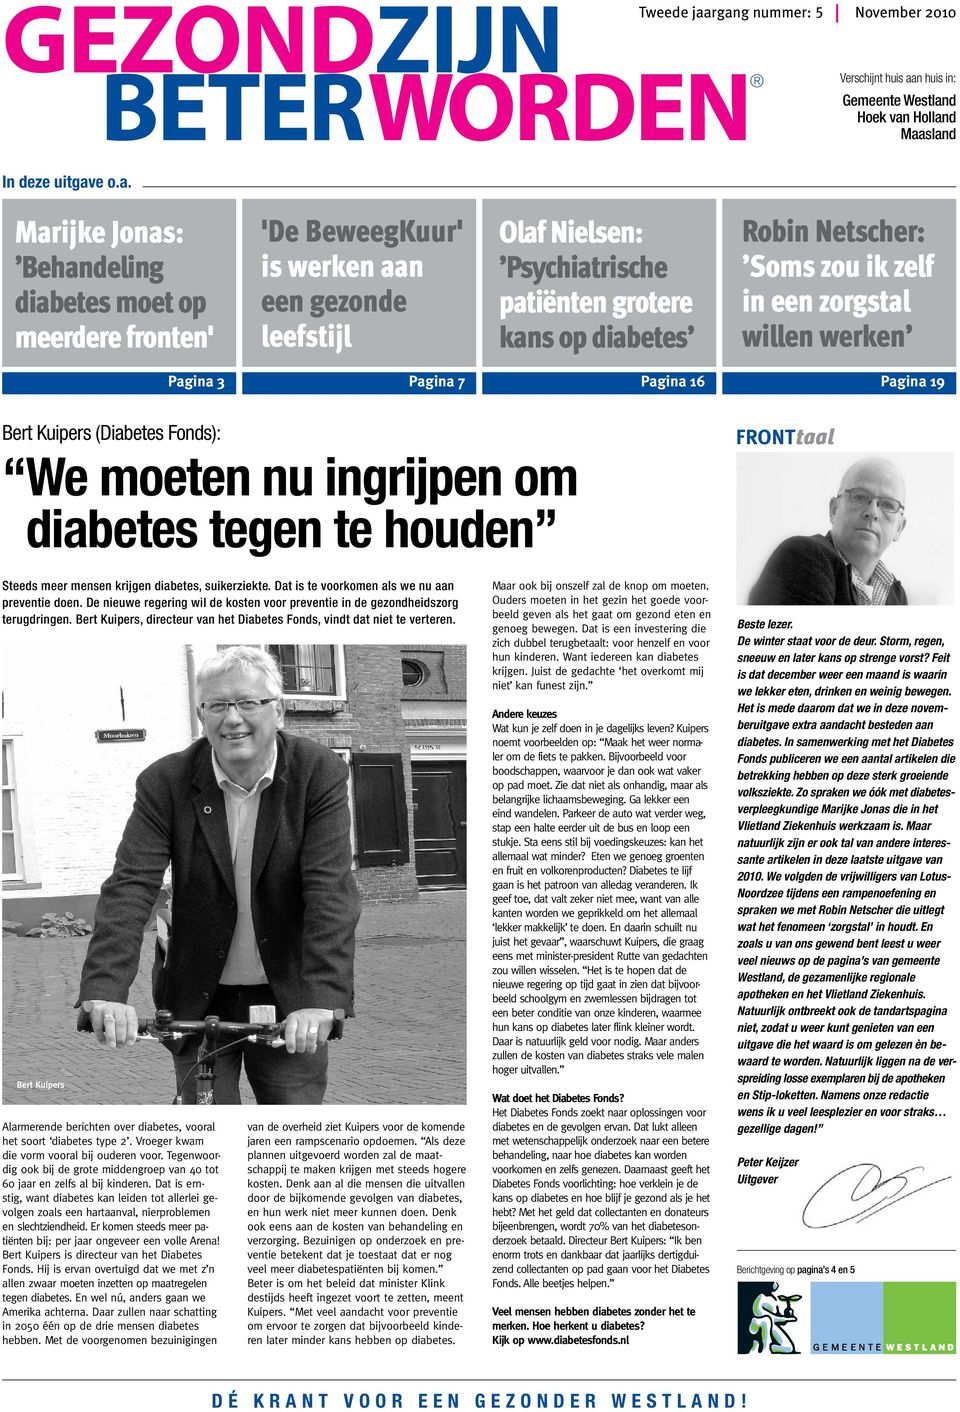 een gezonde leefstijl Olaf Nielsen: Psychiatrische patiënten grotere kans op diabetes Robin Netscher: Somszou ik zelf in een zorgstal willen werken Pagina 3 Pagina 7 Pagina 16 Pagina 19 Bert Kuipers